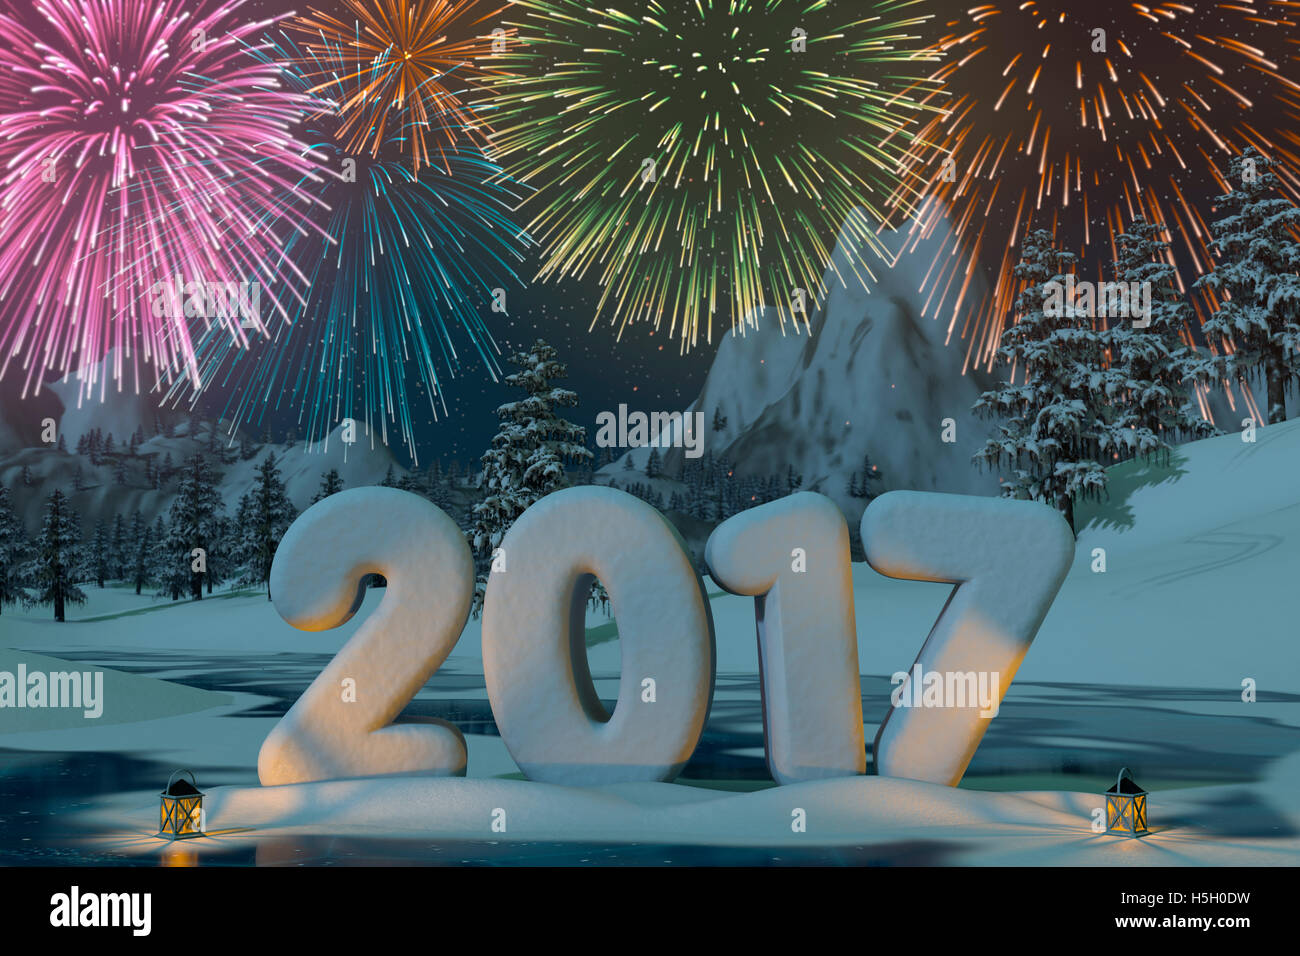 L'année 2017 sculptée dans la neige à l'aide de Fireworks dans un paysage de montagne. A 3d render. Banque D'Images